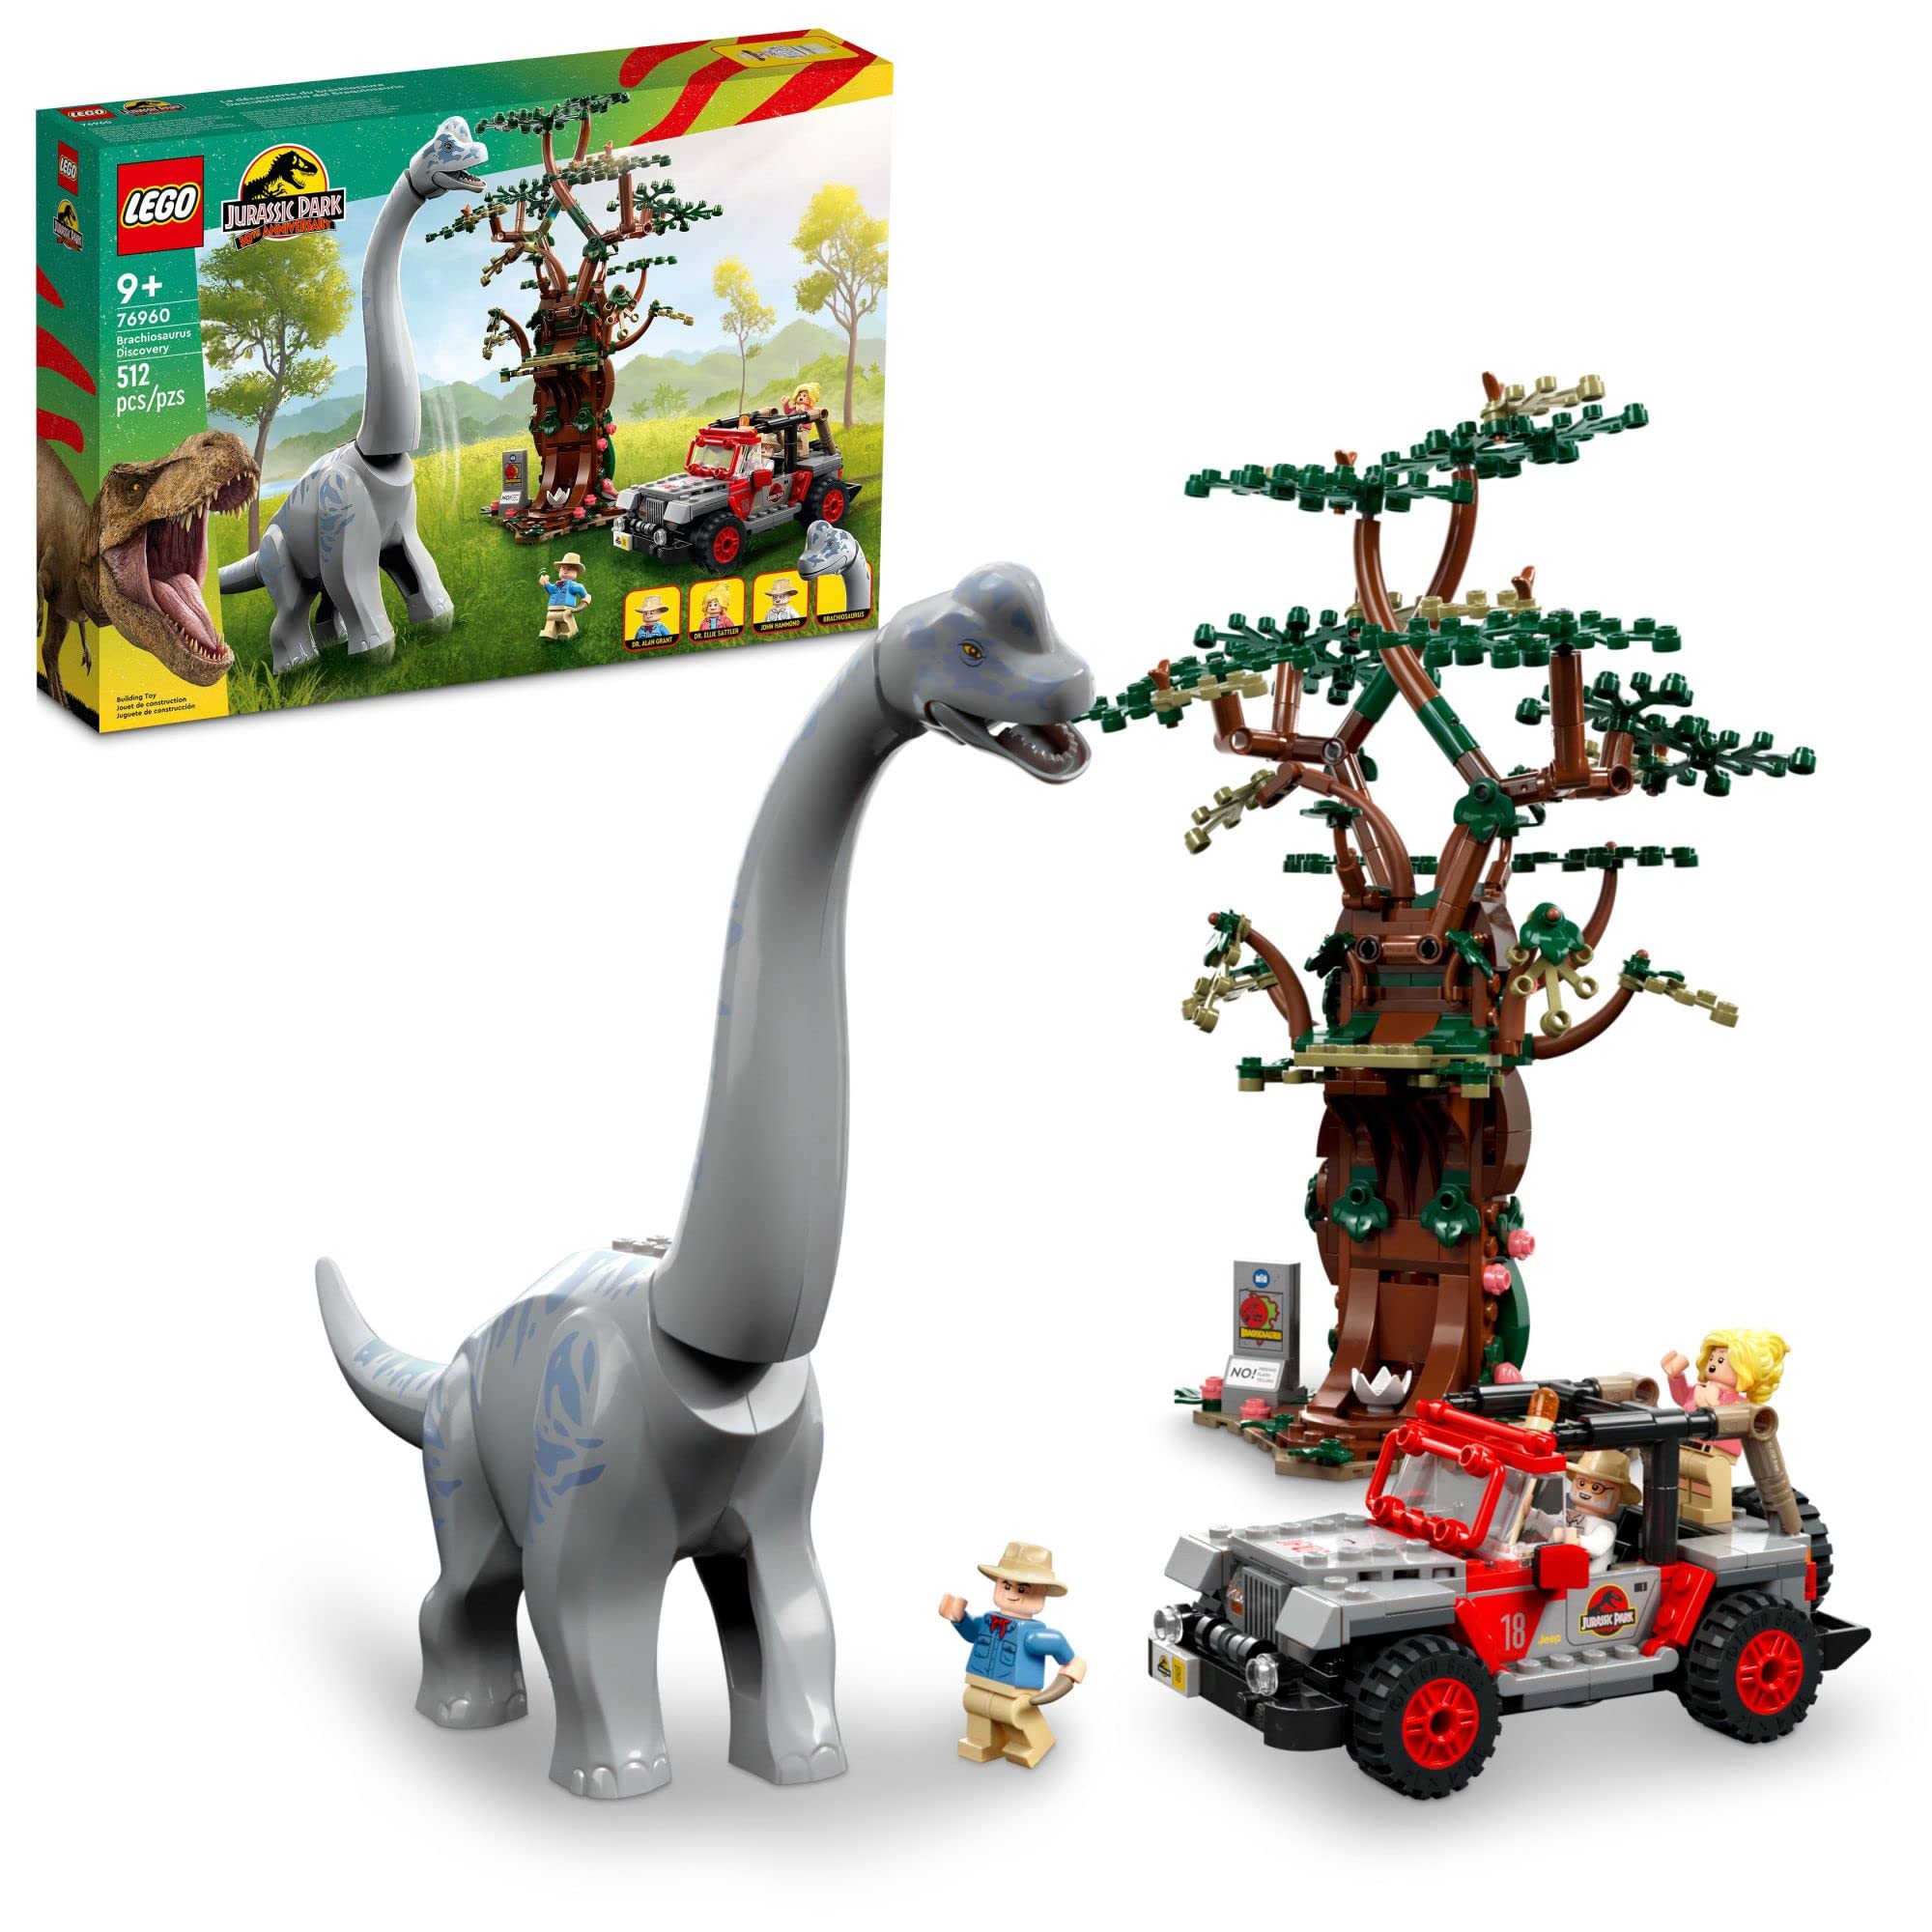  LEGO जुरासिक वर्ल्ड ब्रैचियोसॉरस डिस्कवरी 76960 जुरासिक पार्क 30वीं वर्षगांठ डाय...